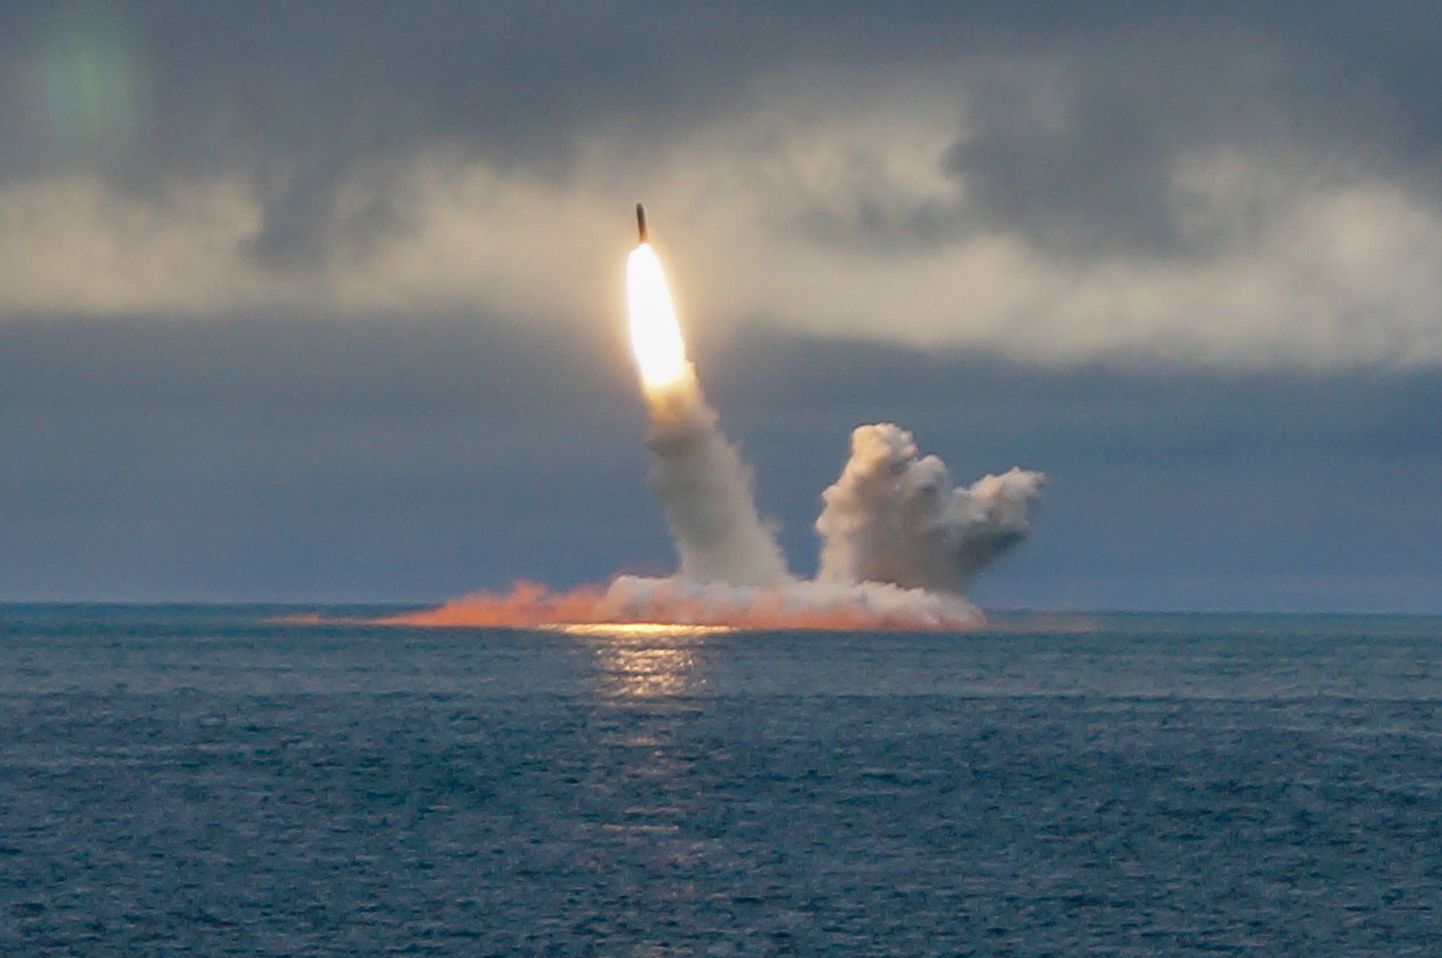 Vene raketikatsetus Barentsi merel. Foto on illustratiivne.